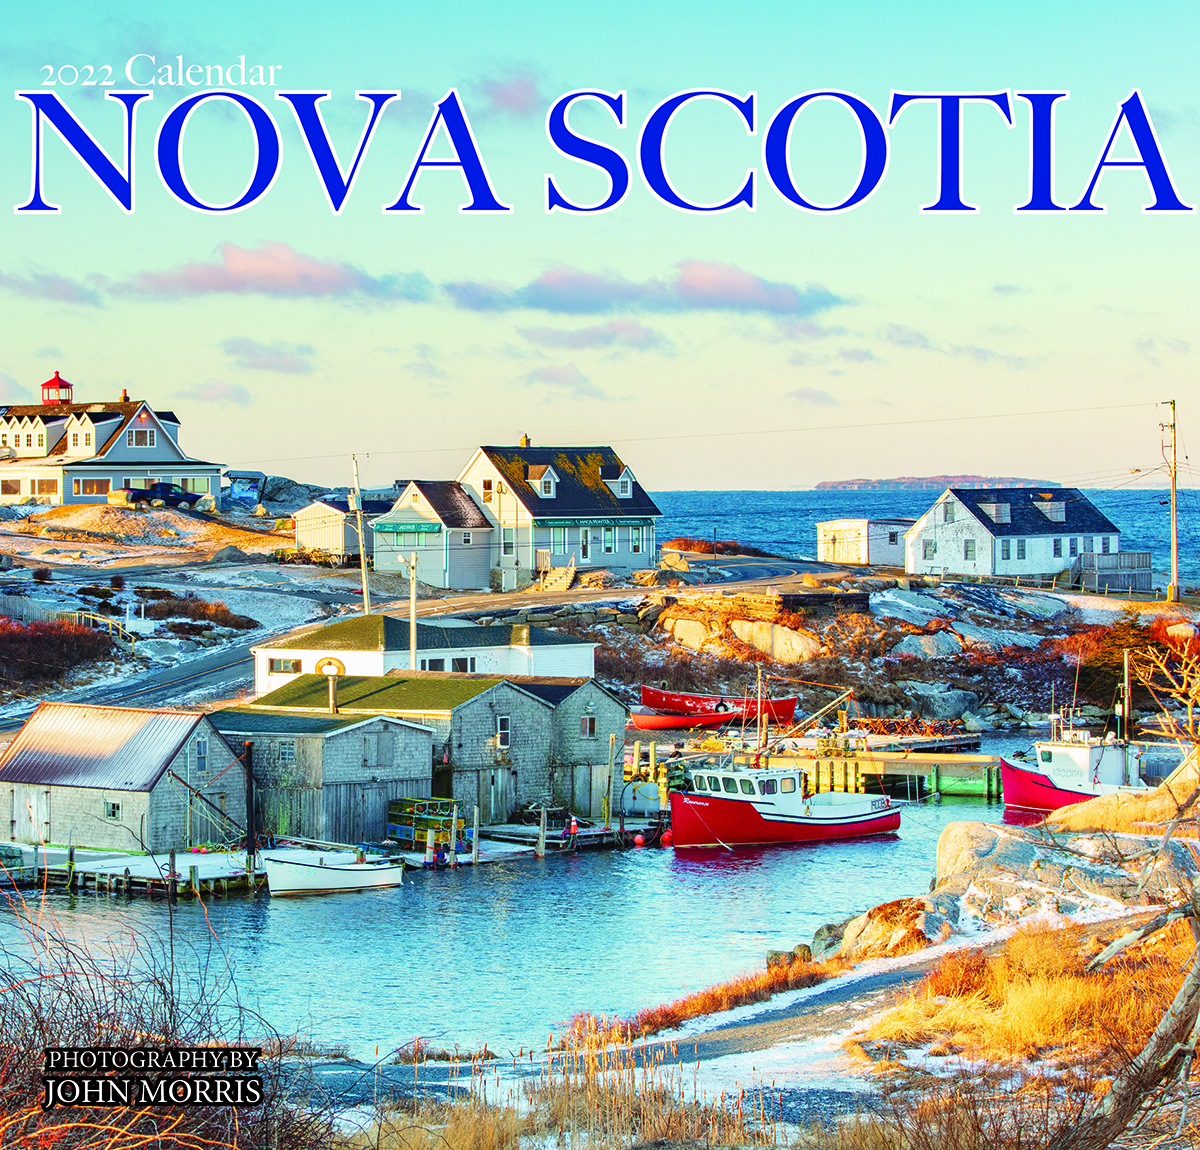 2022 Nova Scotia Calendar